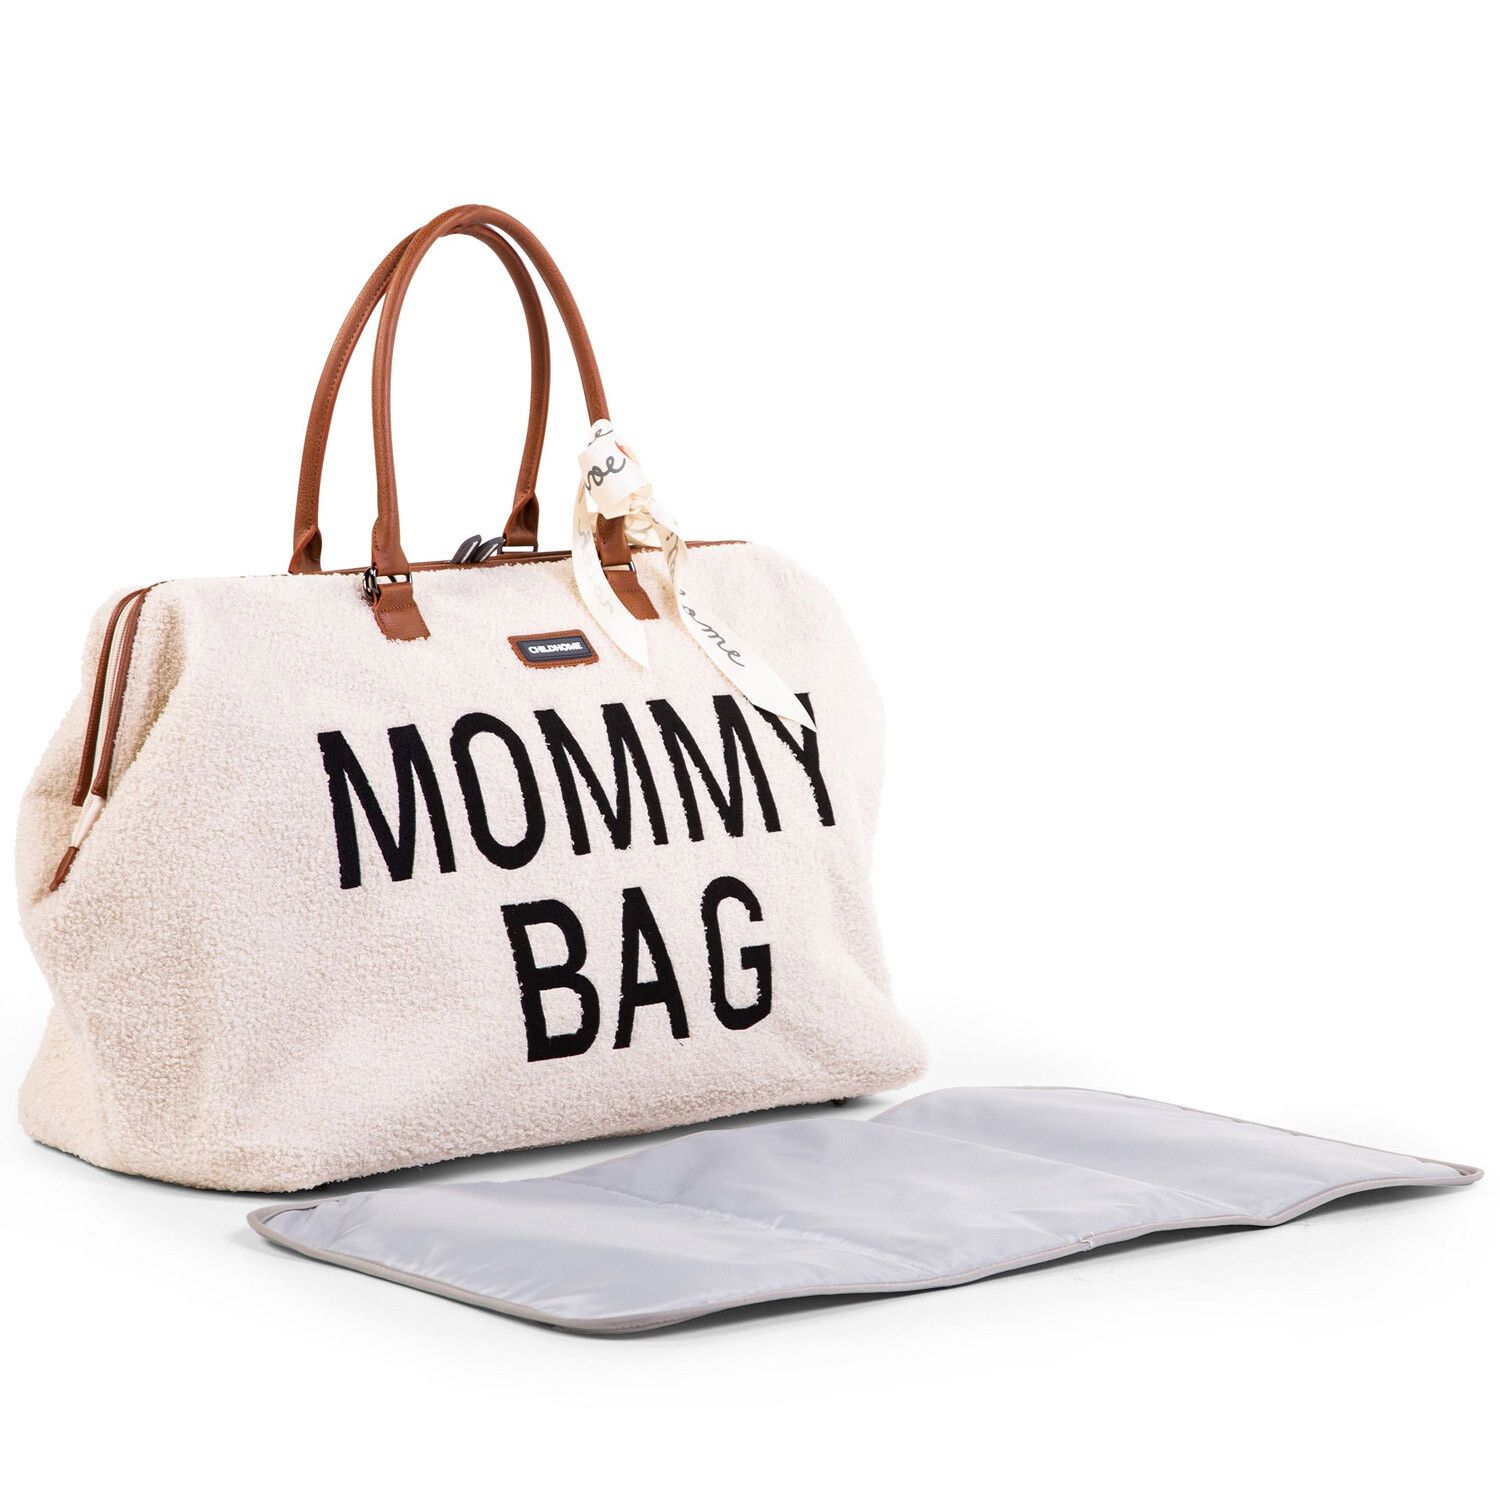 mommy-bag-childhome-teddy-ecru3_CWO00519_2_1